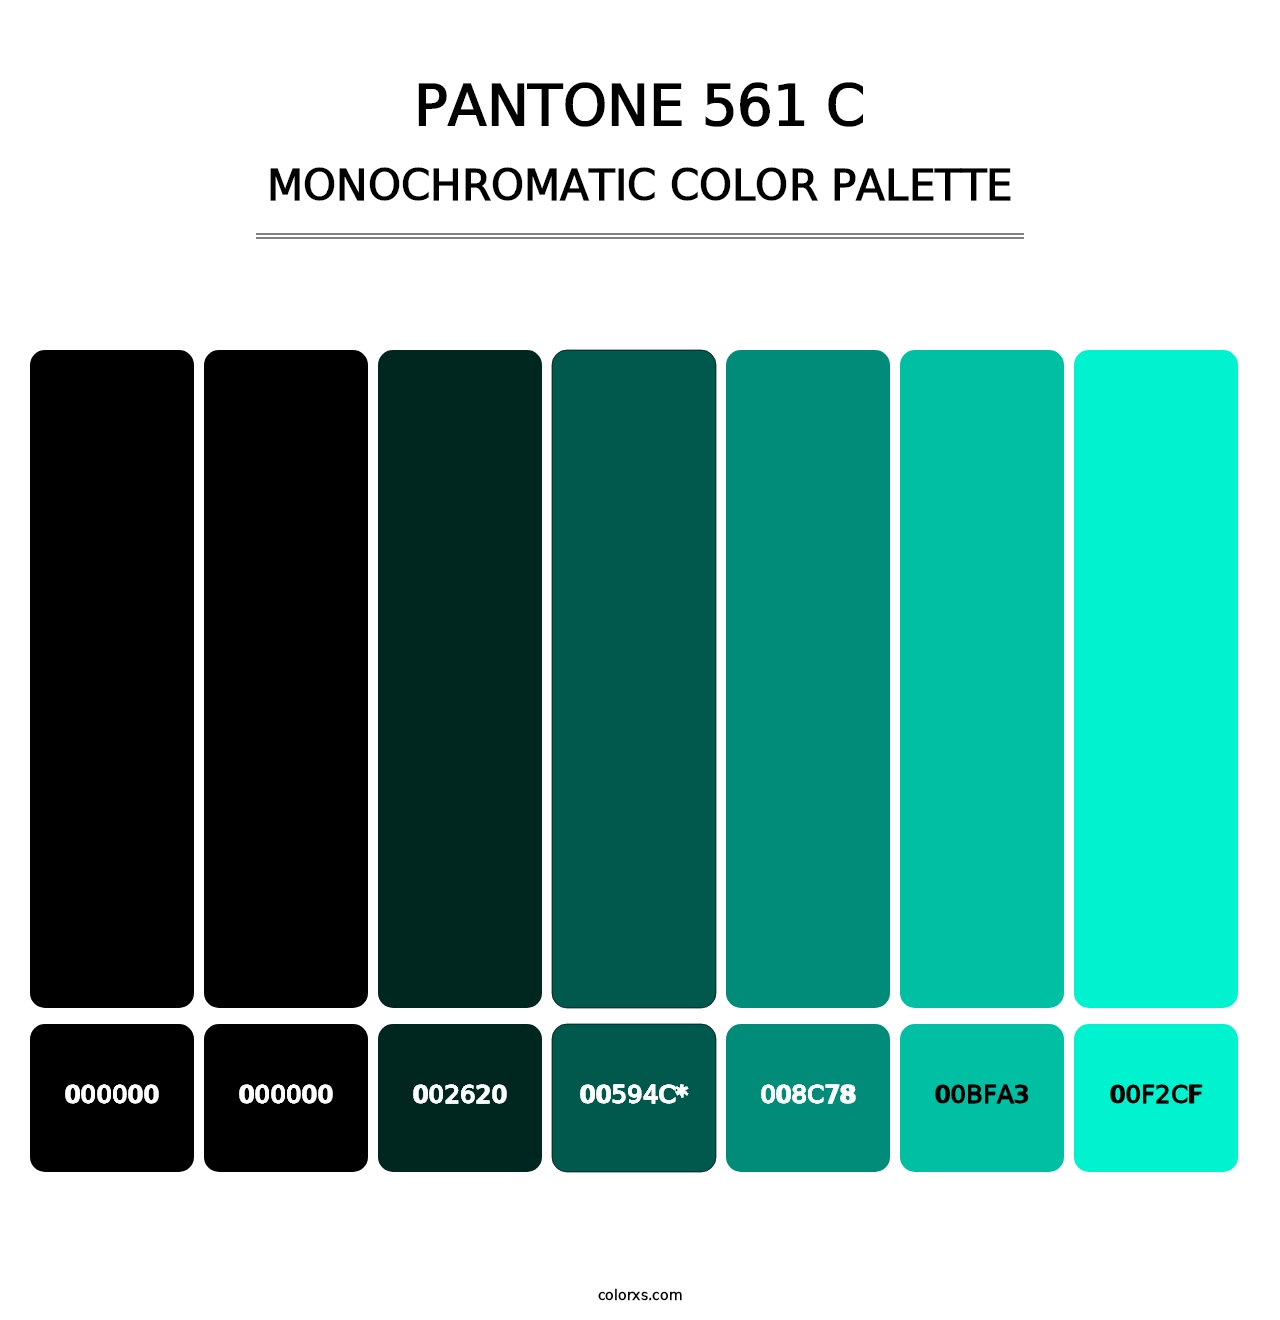 PANTONE 561 C - Monochromatic Color Palette